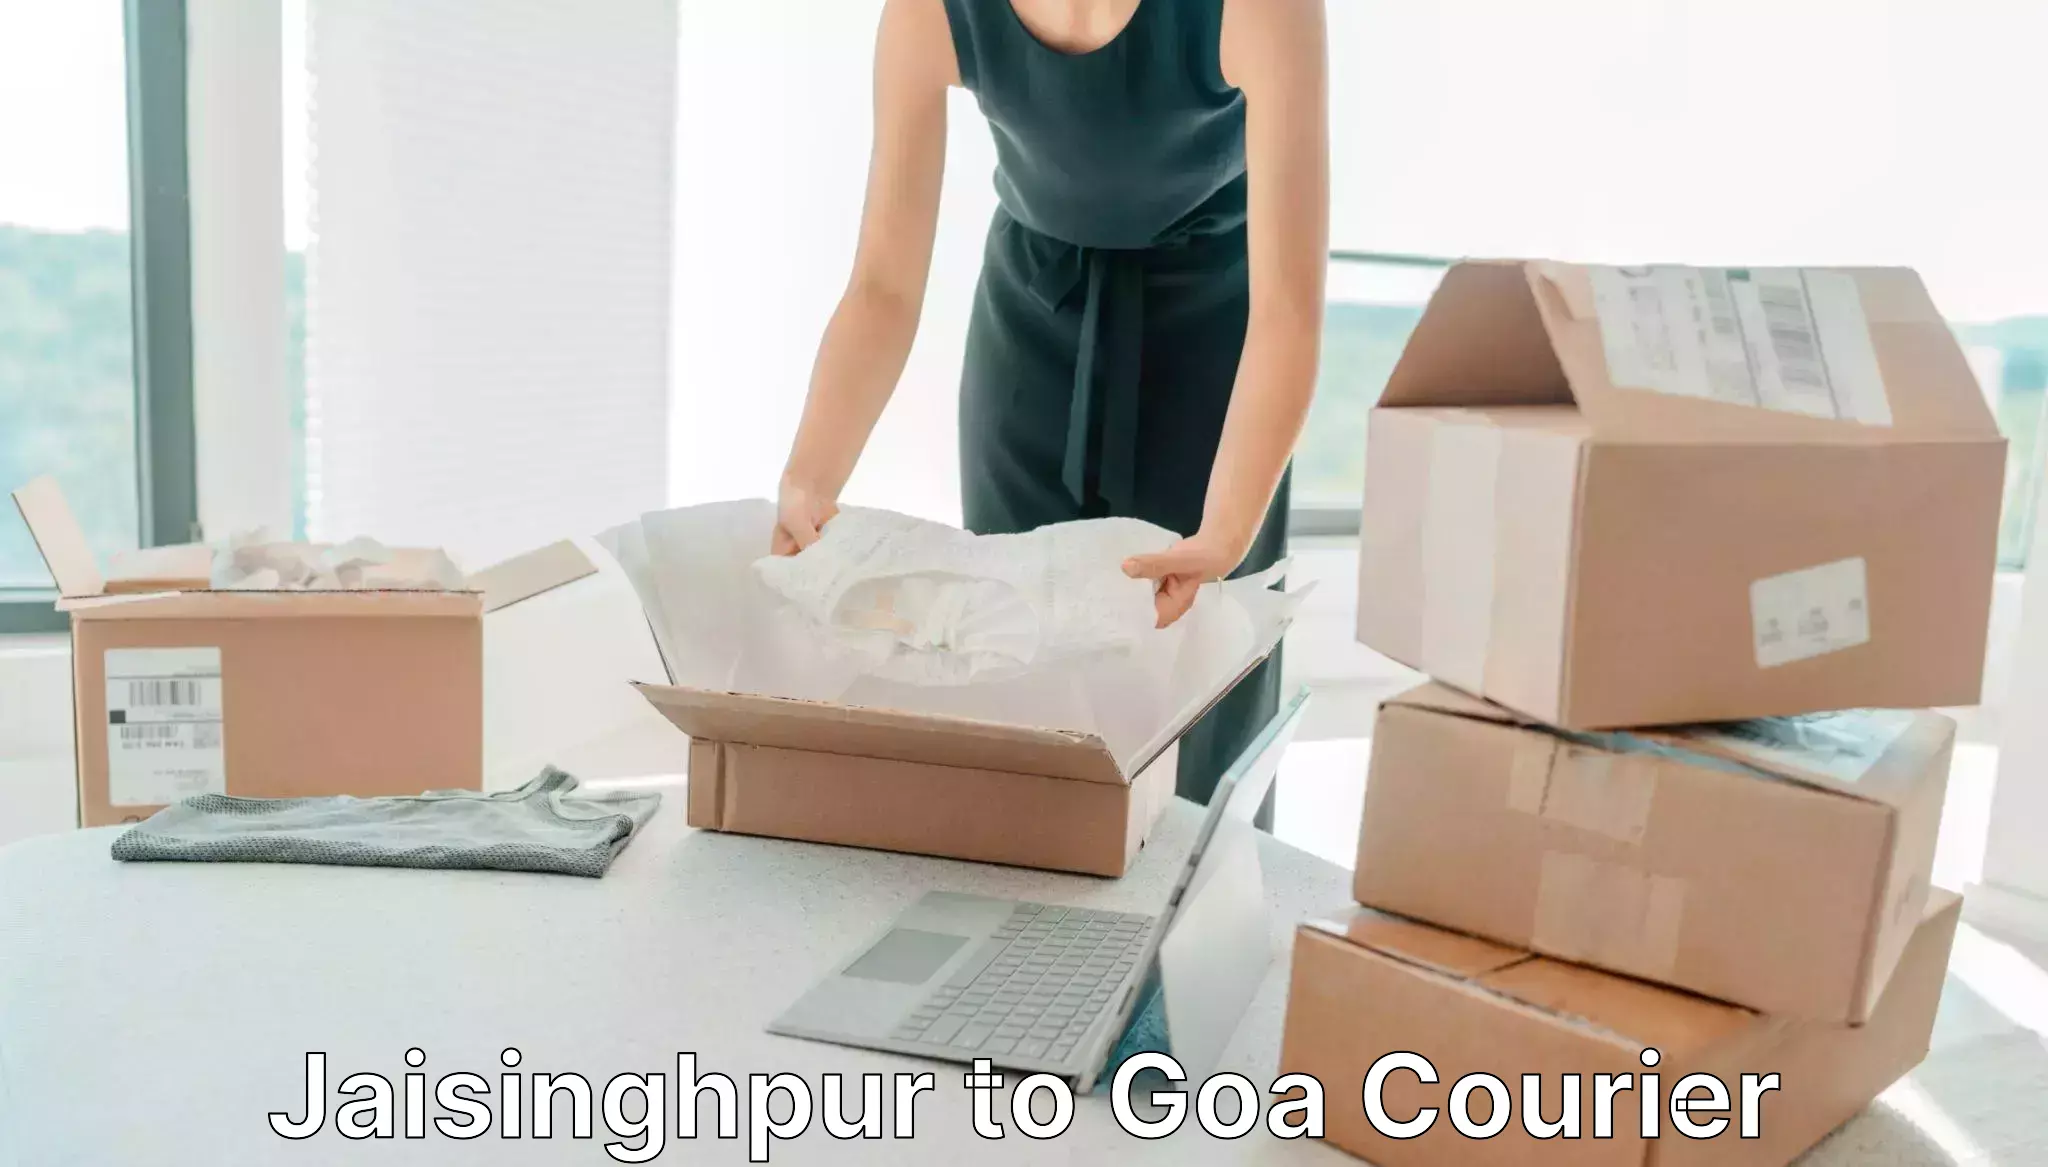 Quick parcel dispatch in Jaisinghpur to Vasco da Gama